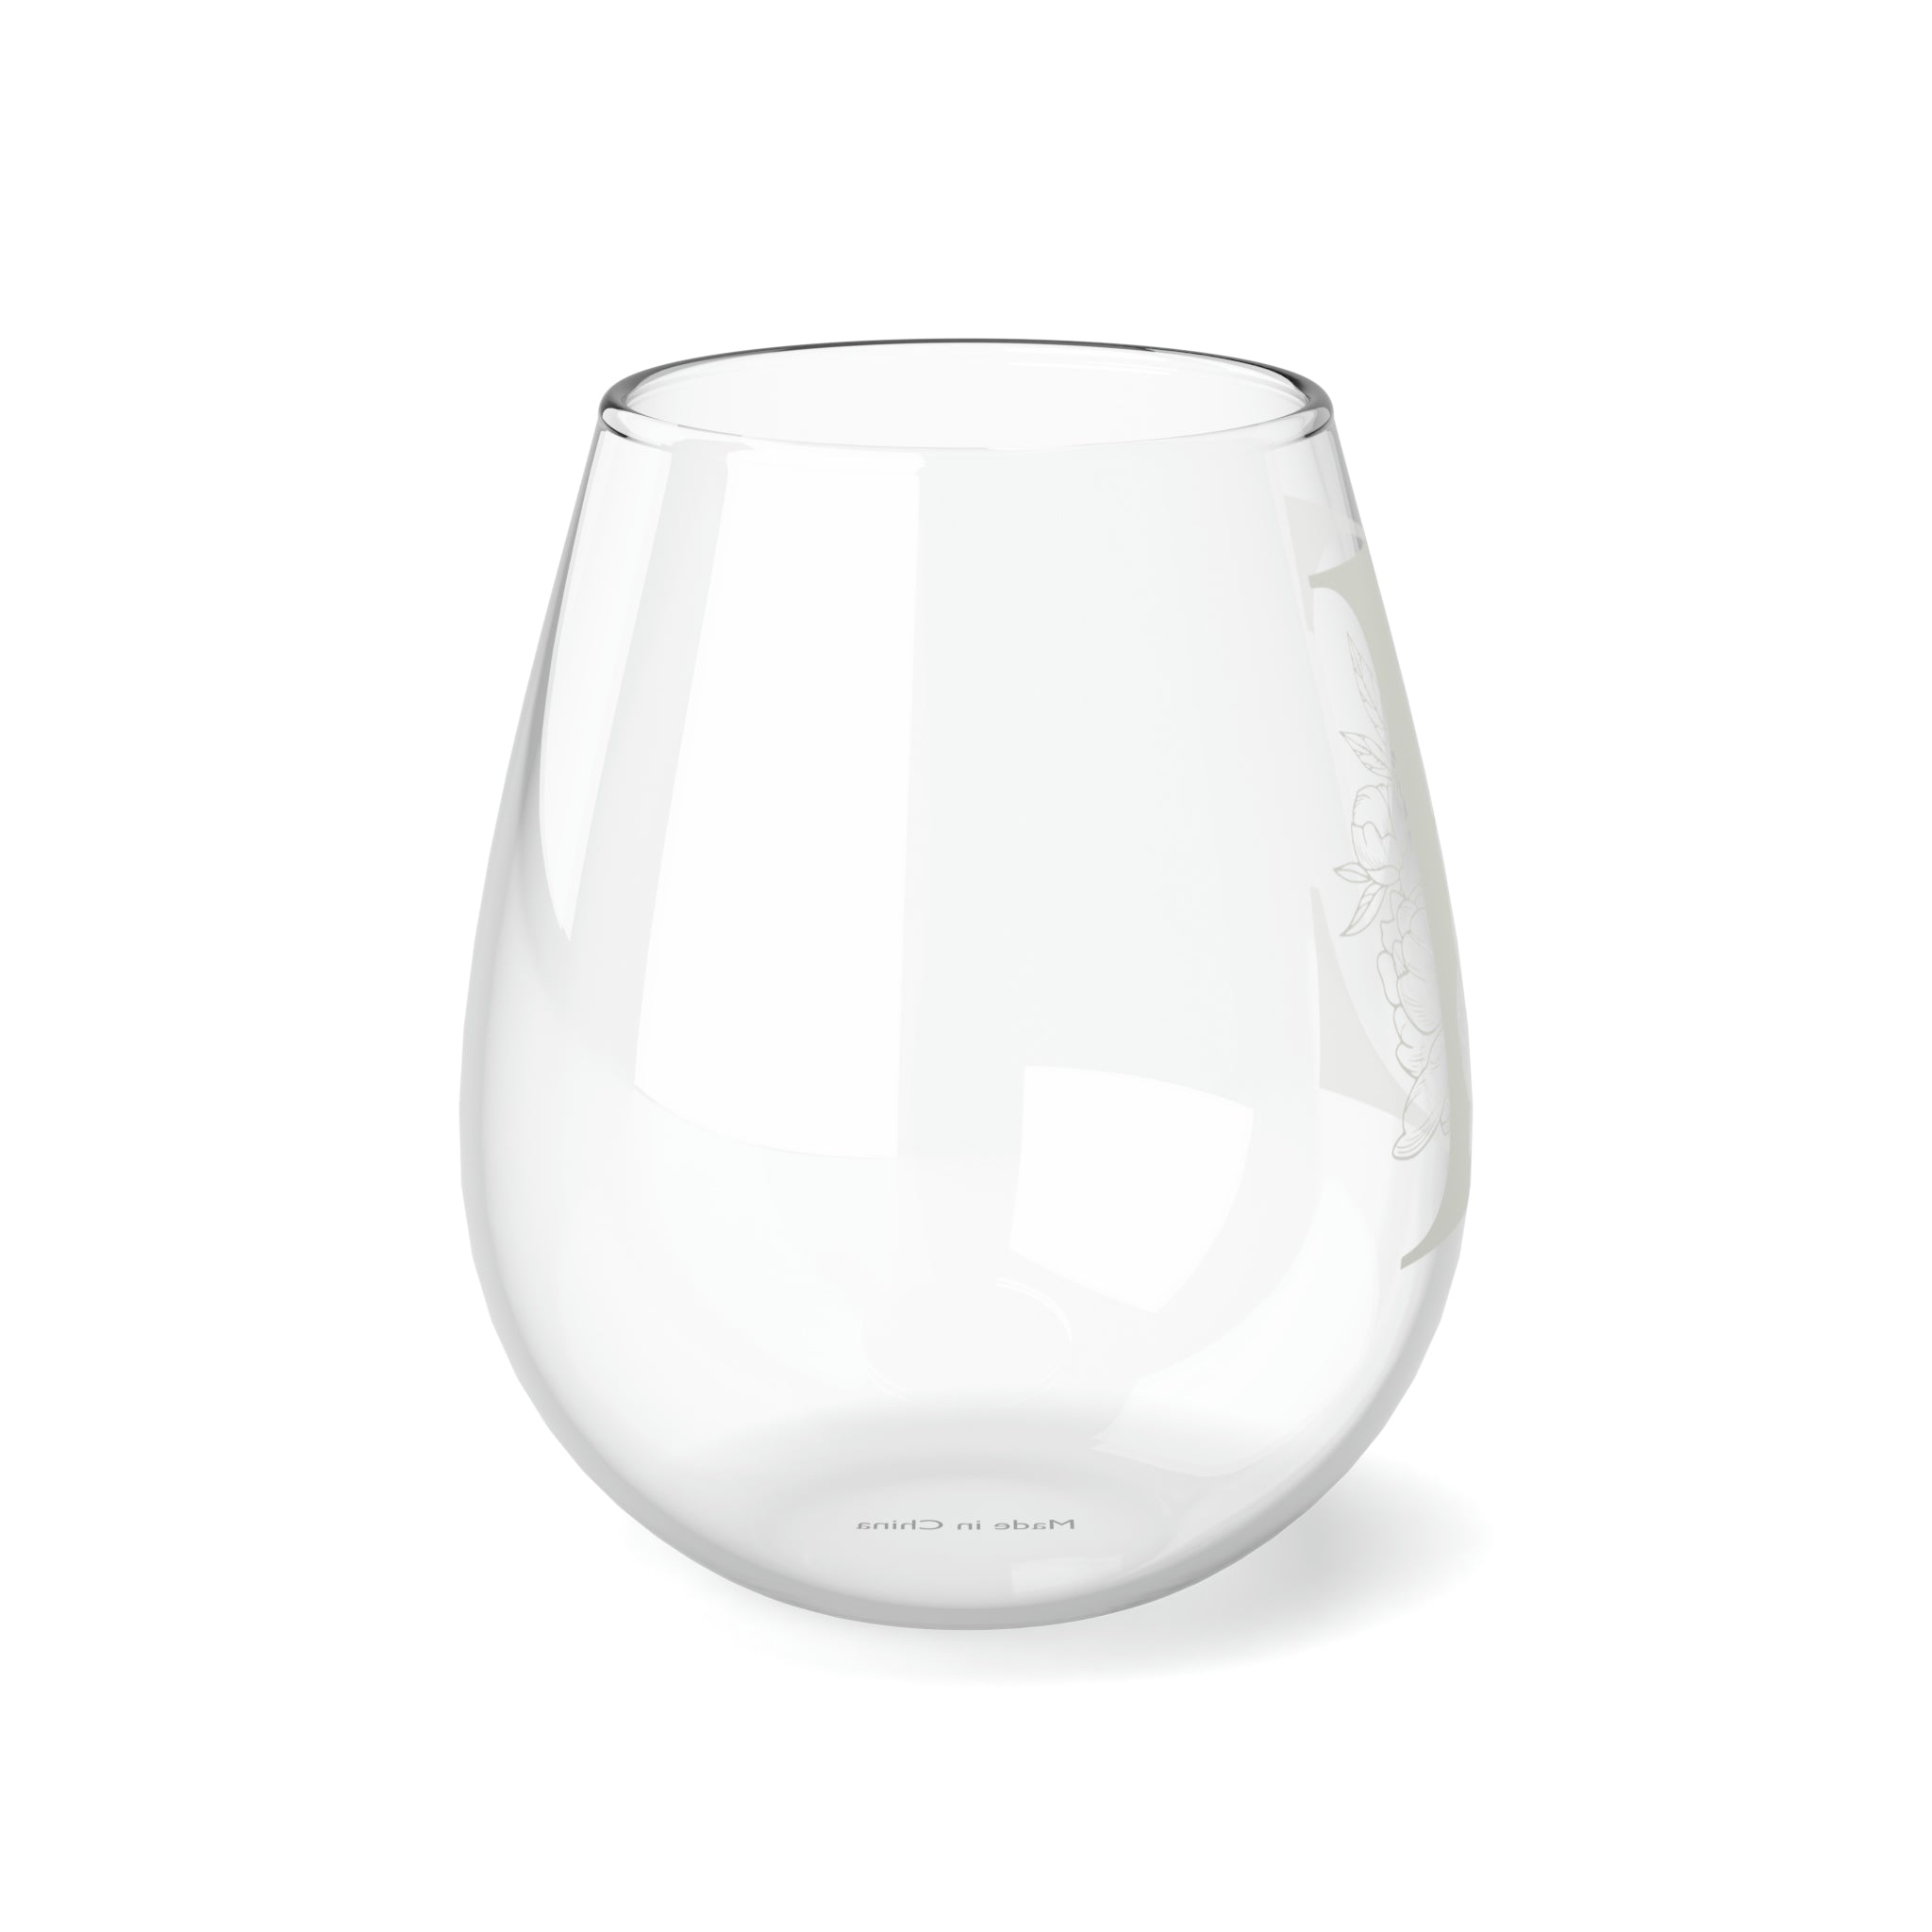 Stemless Wine Glass, 11.75oz - Monogram E